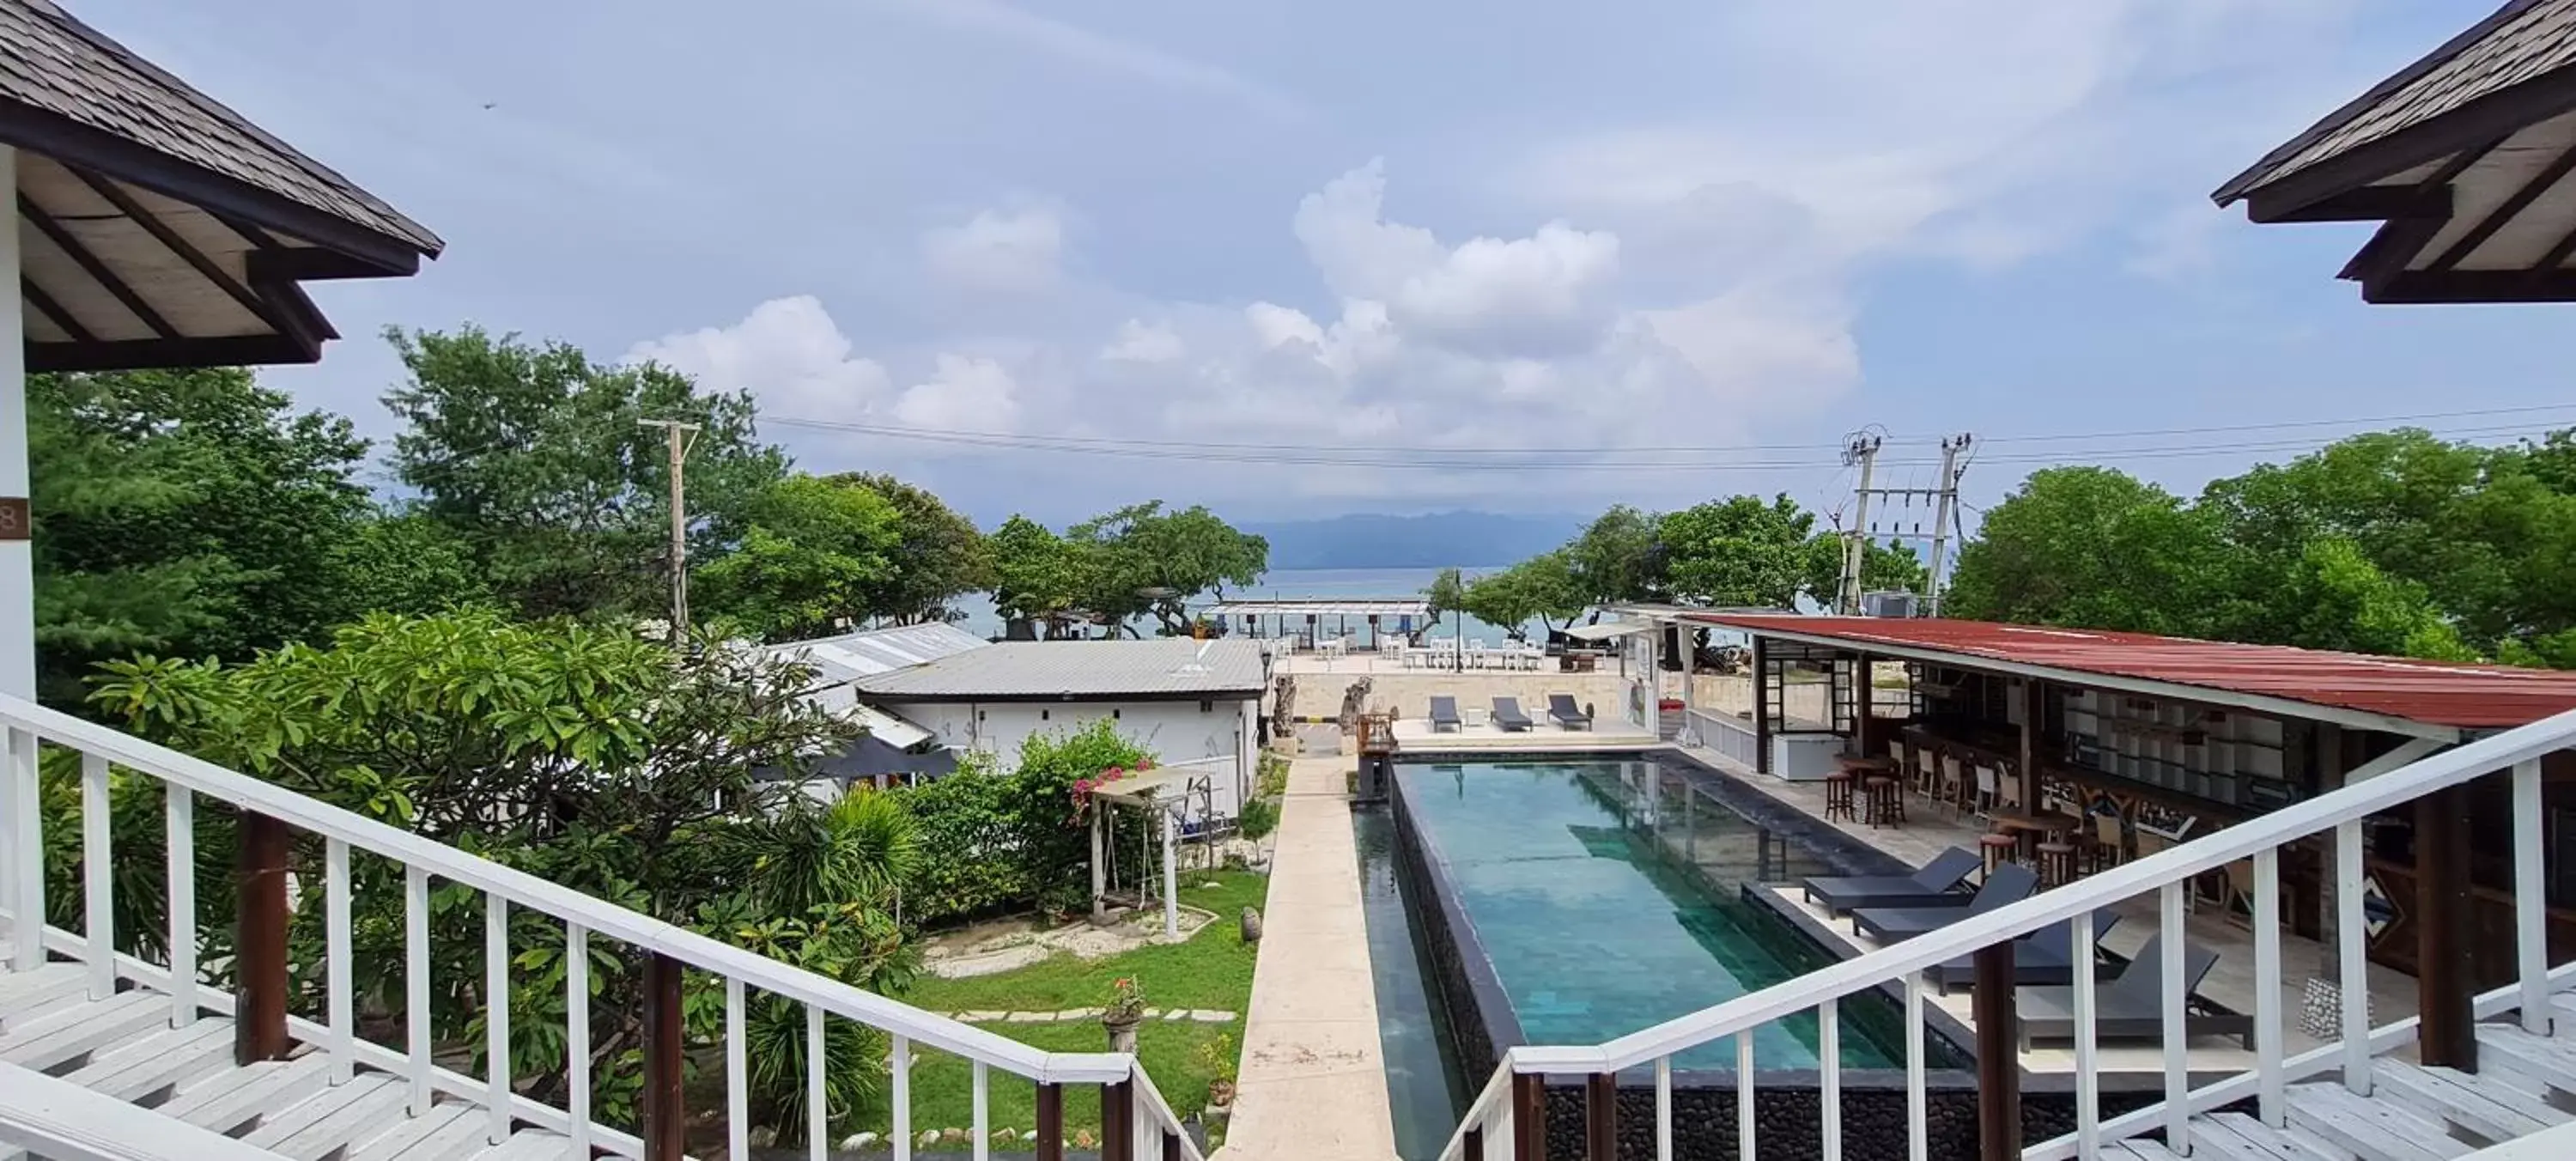 Property building, Pool View in The Trawangan Resort